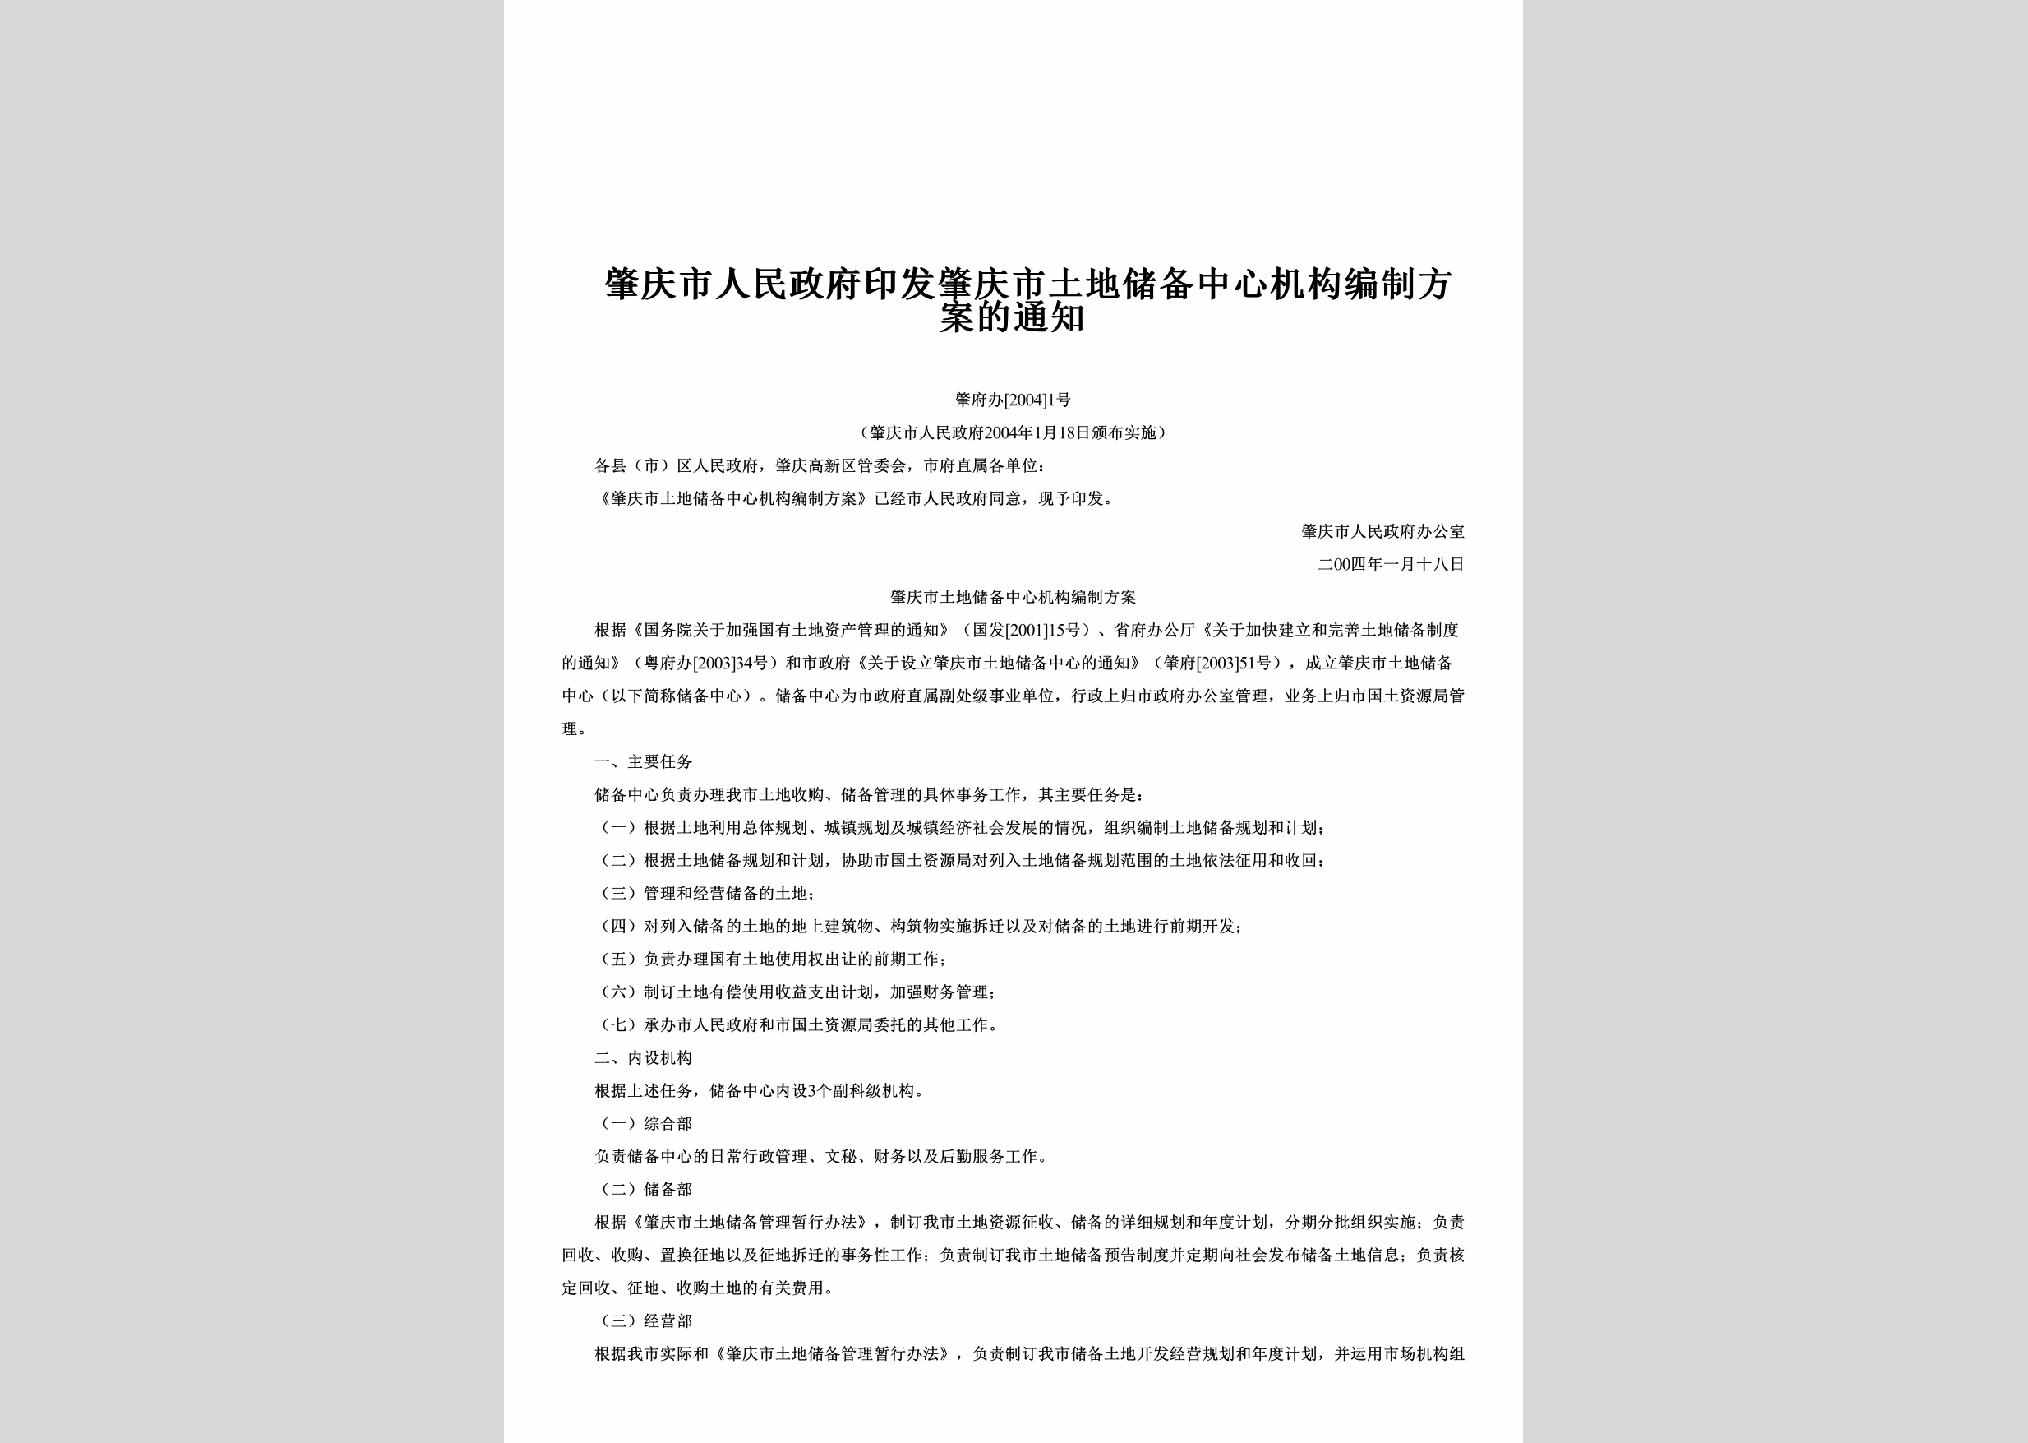 肇府办[2004]1号：印发肇庆市土地储备中心机构编制方案的通知